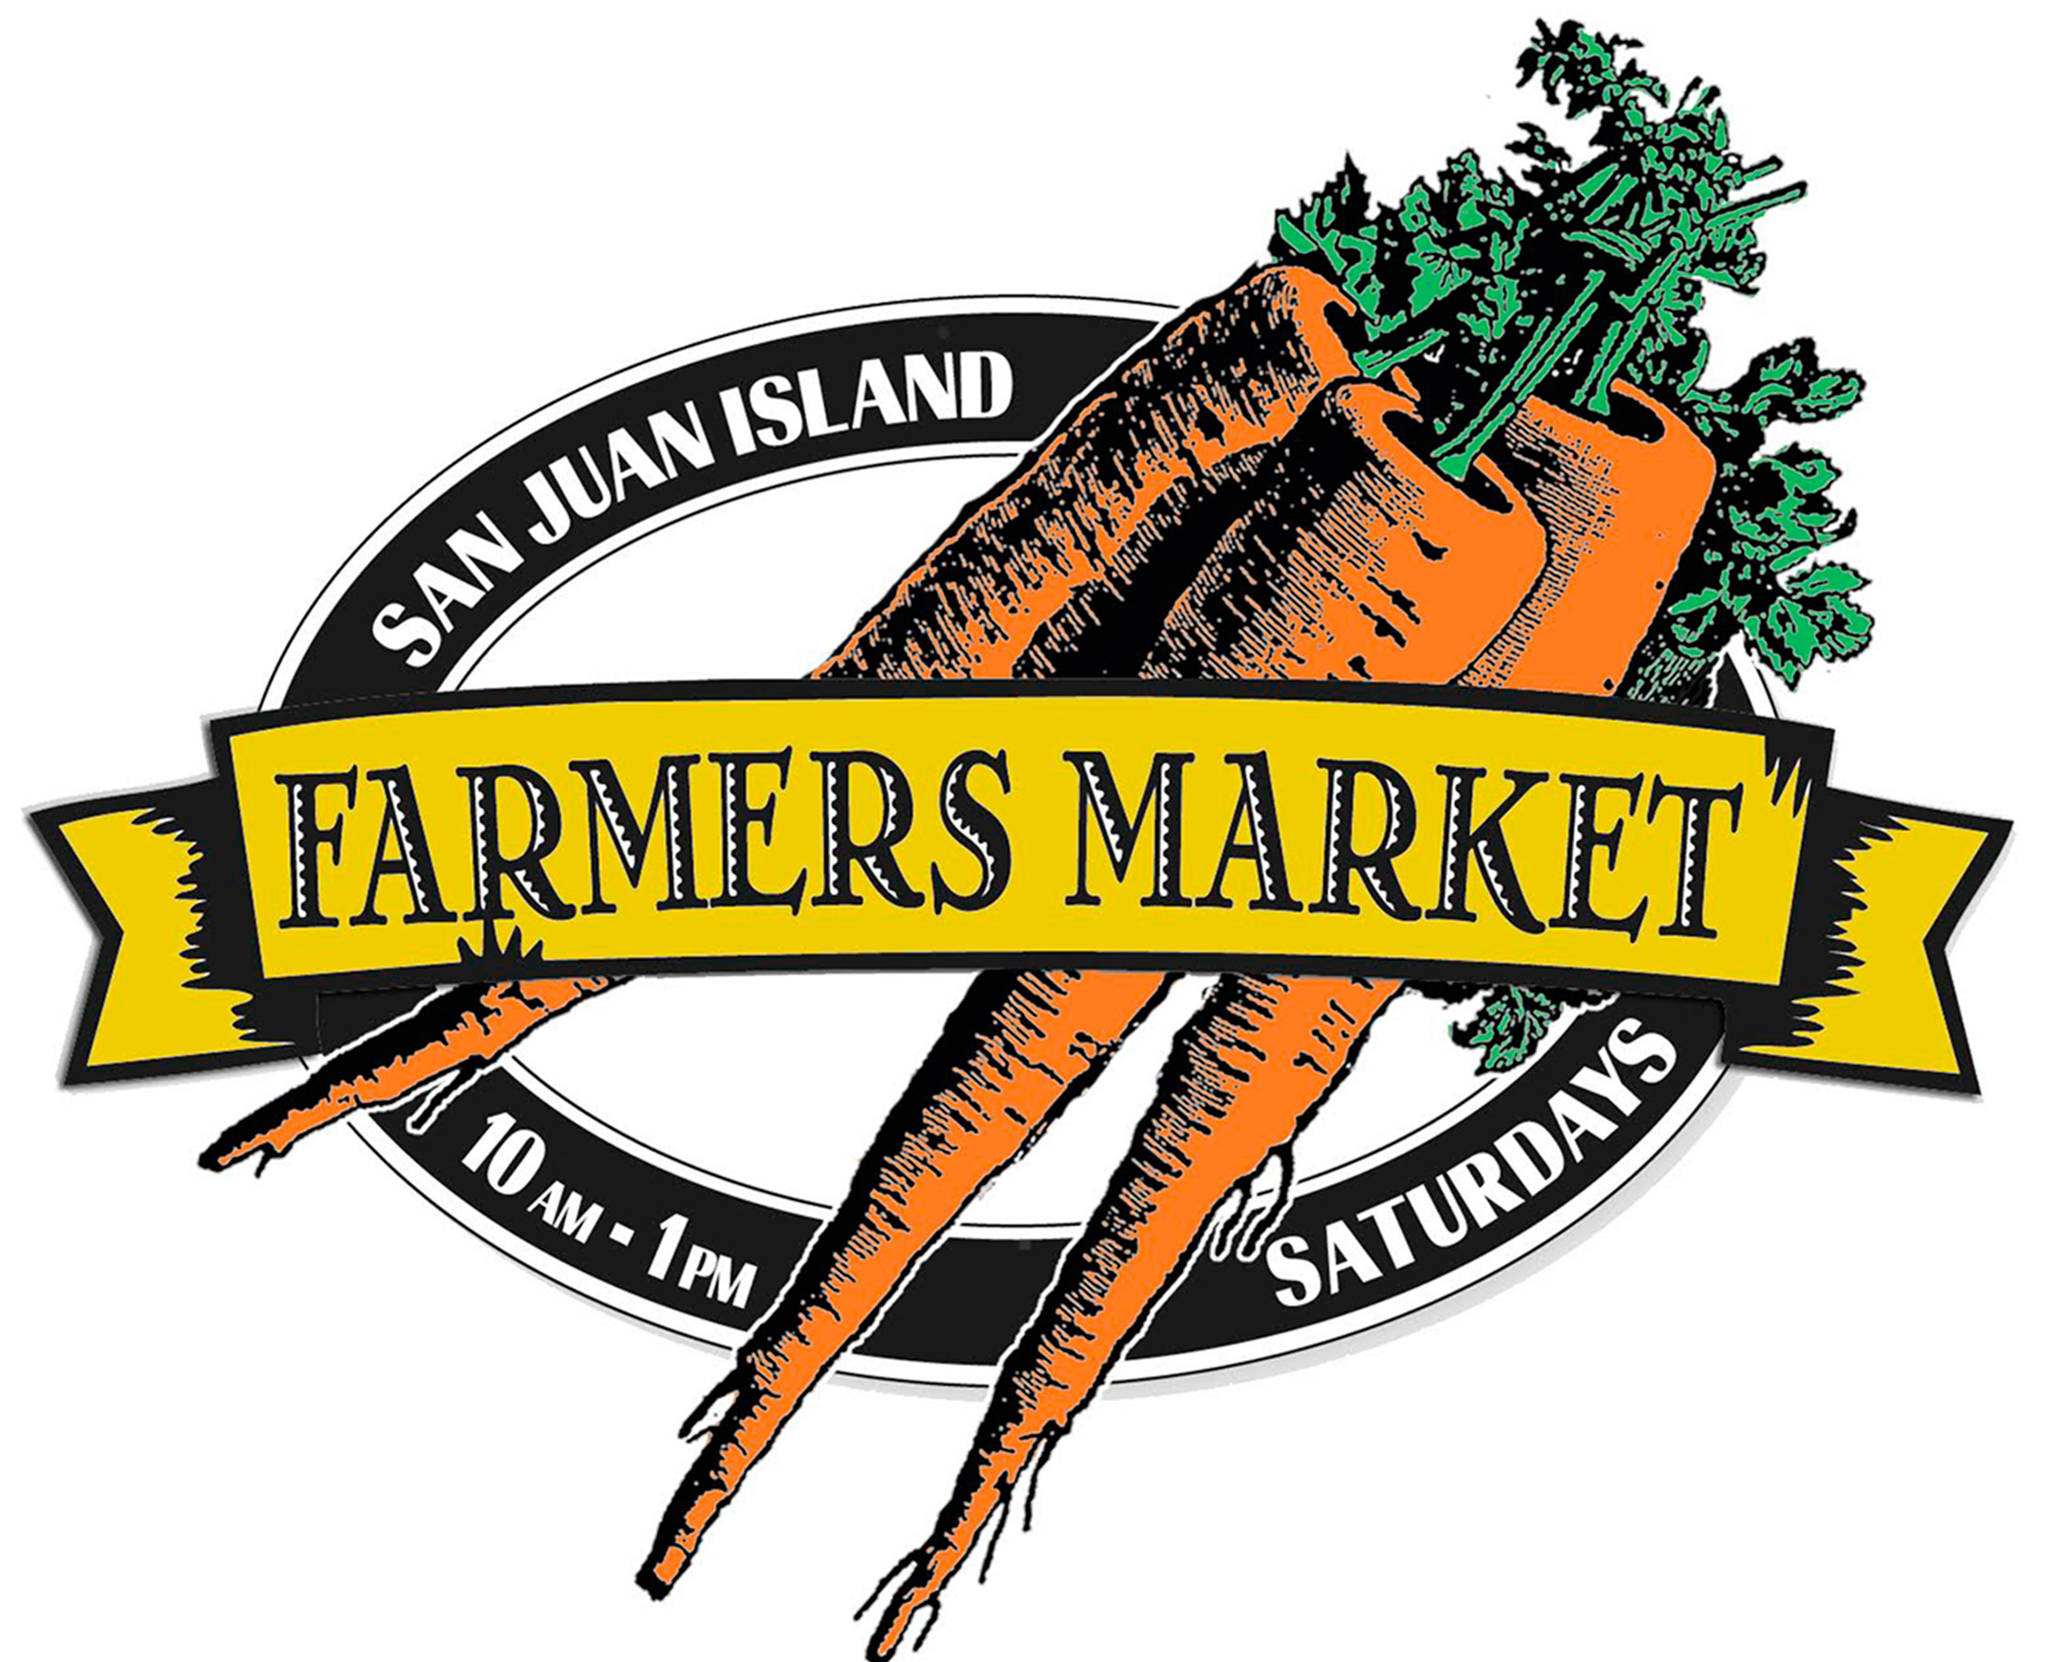 Weekly farmers market begins April 1